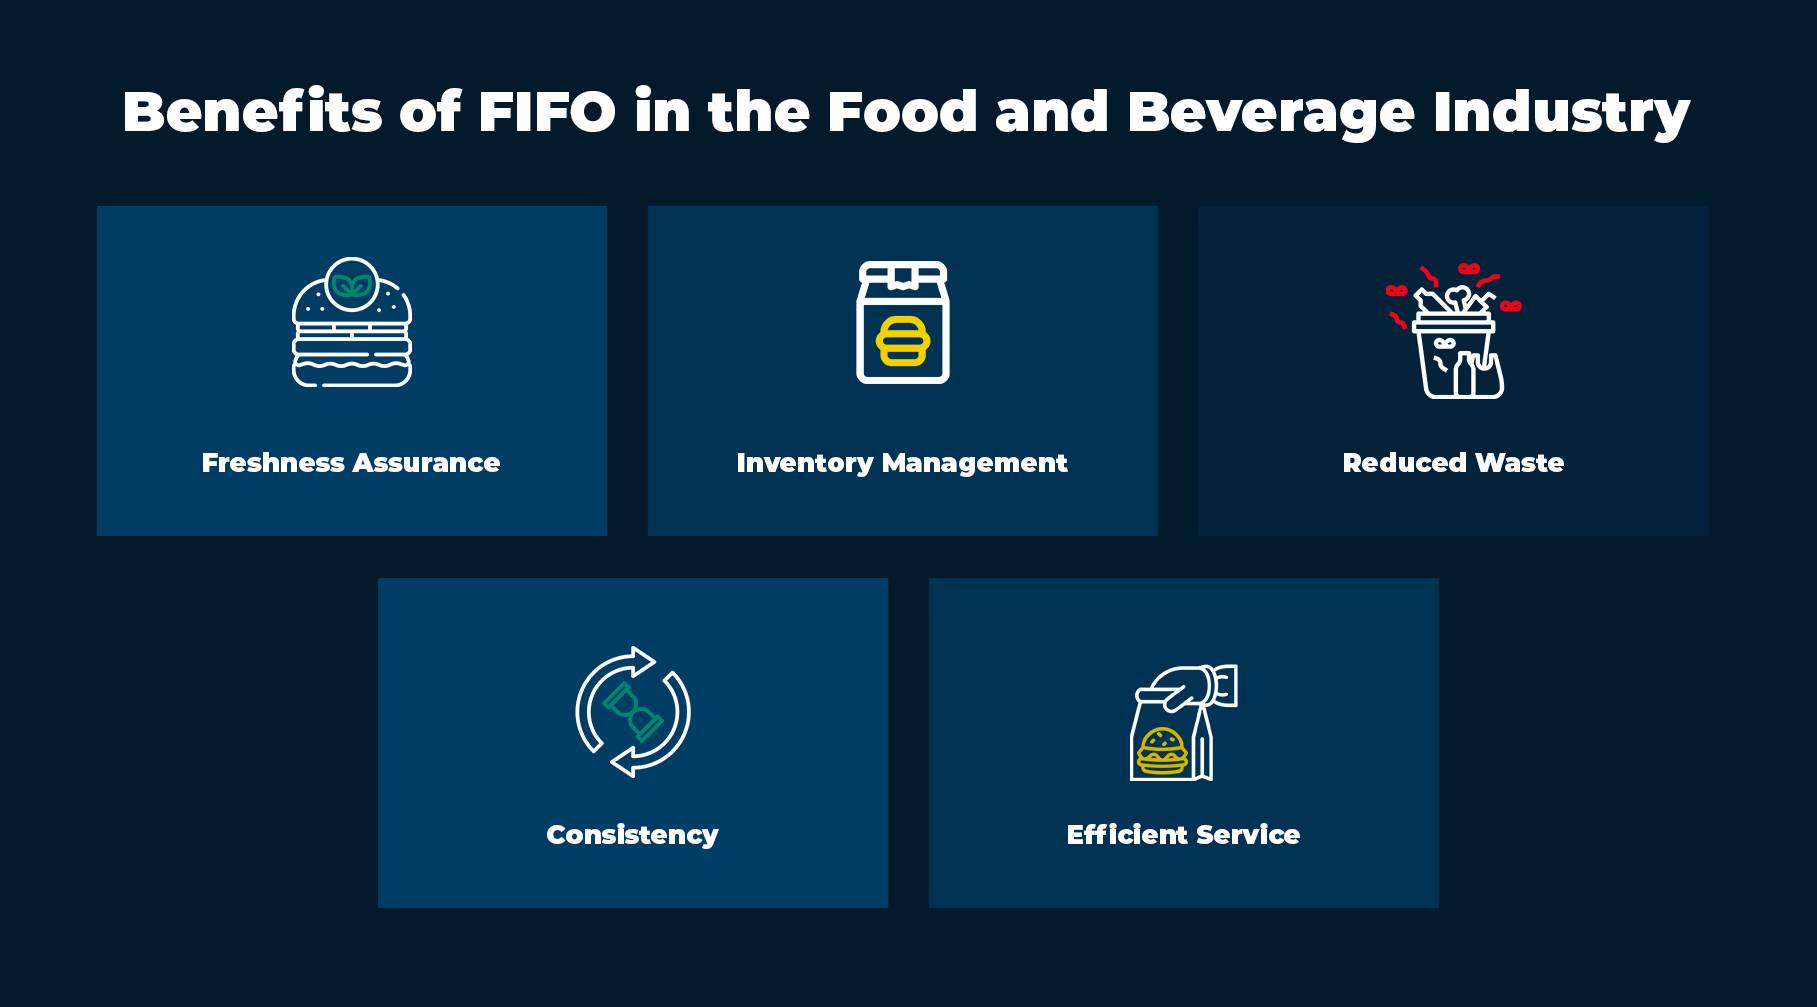 ประโยชน์ของ FIFO ในอุตสาหกรรมอาหารและเครื่องดื่ม